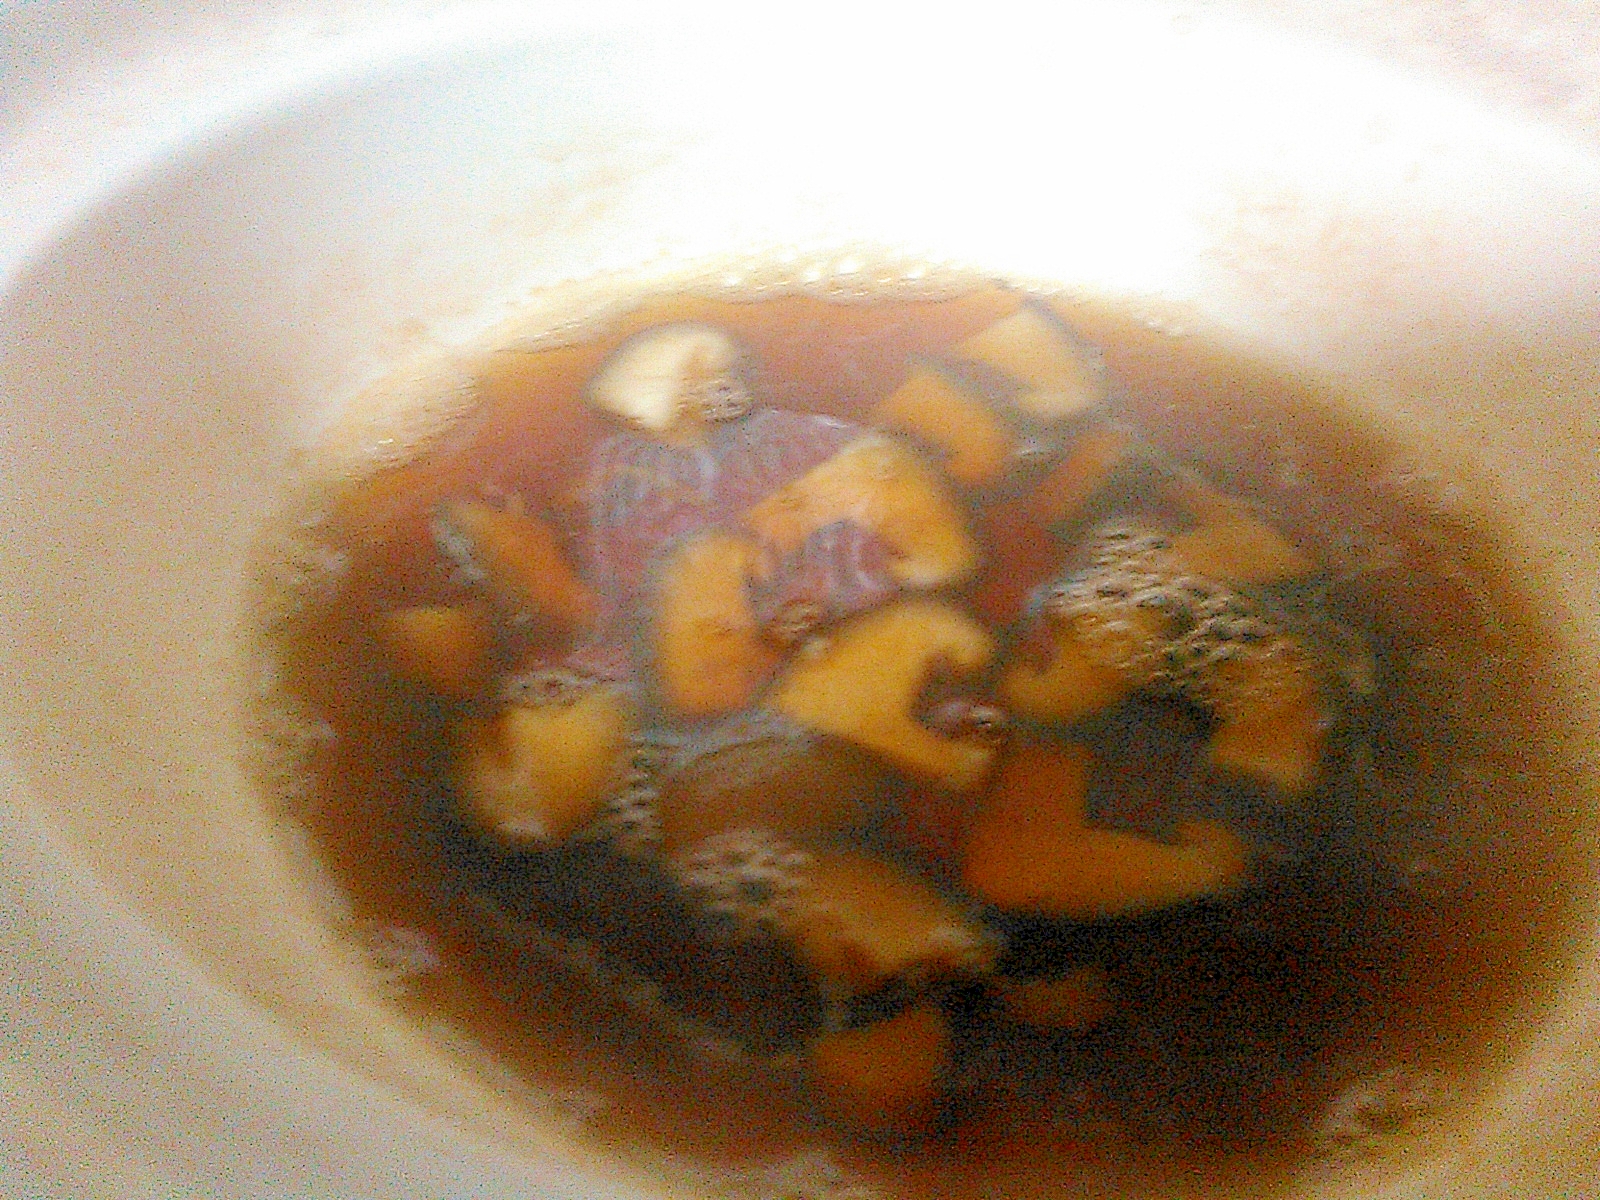 椎茸の中華スープ